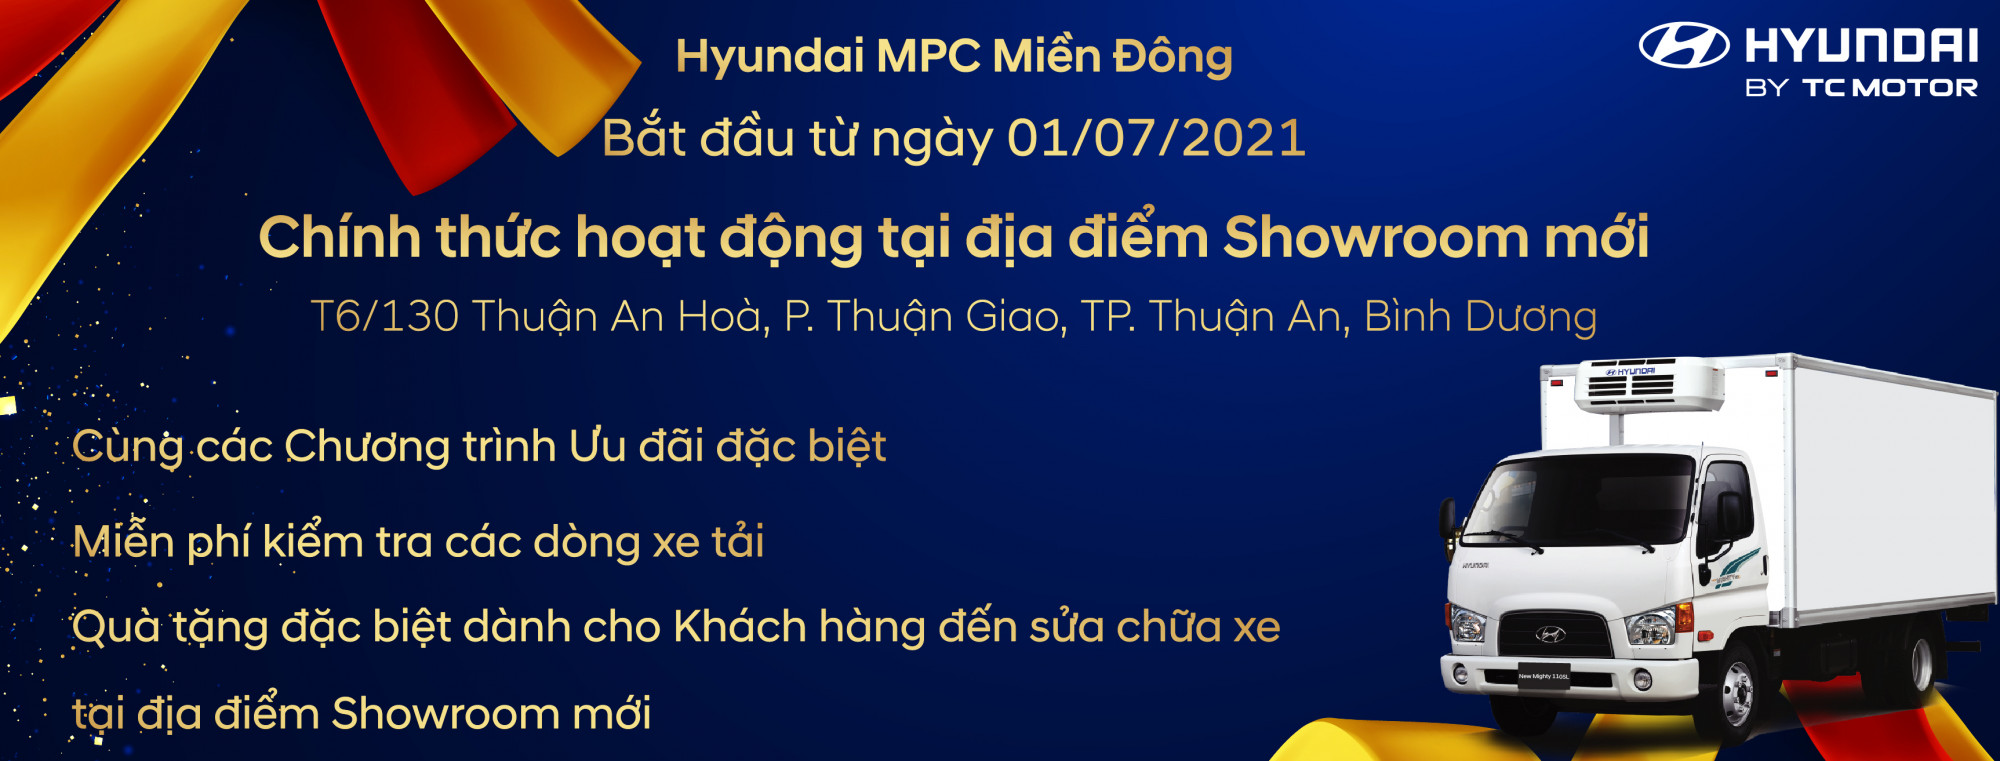 Hyundai MPC Miền Đông chính thức hoạt động tại địa điểm Showroom mới